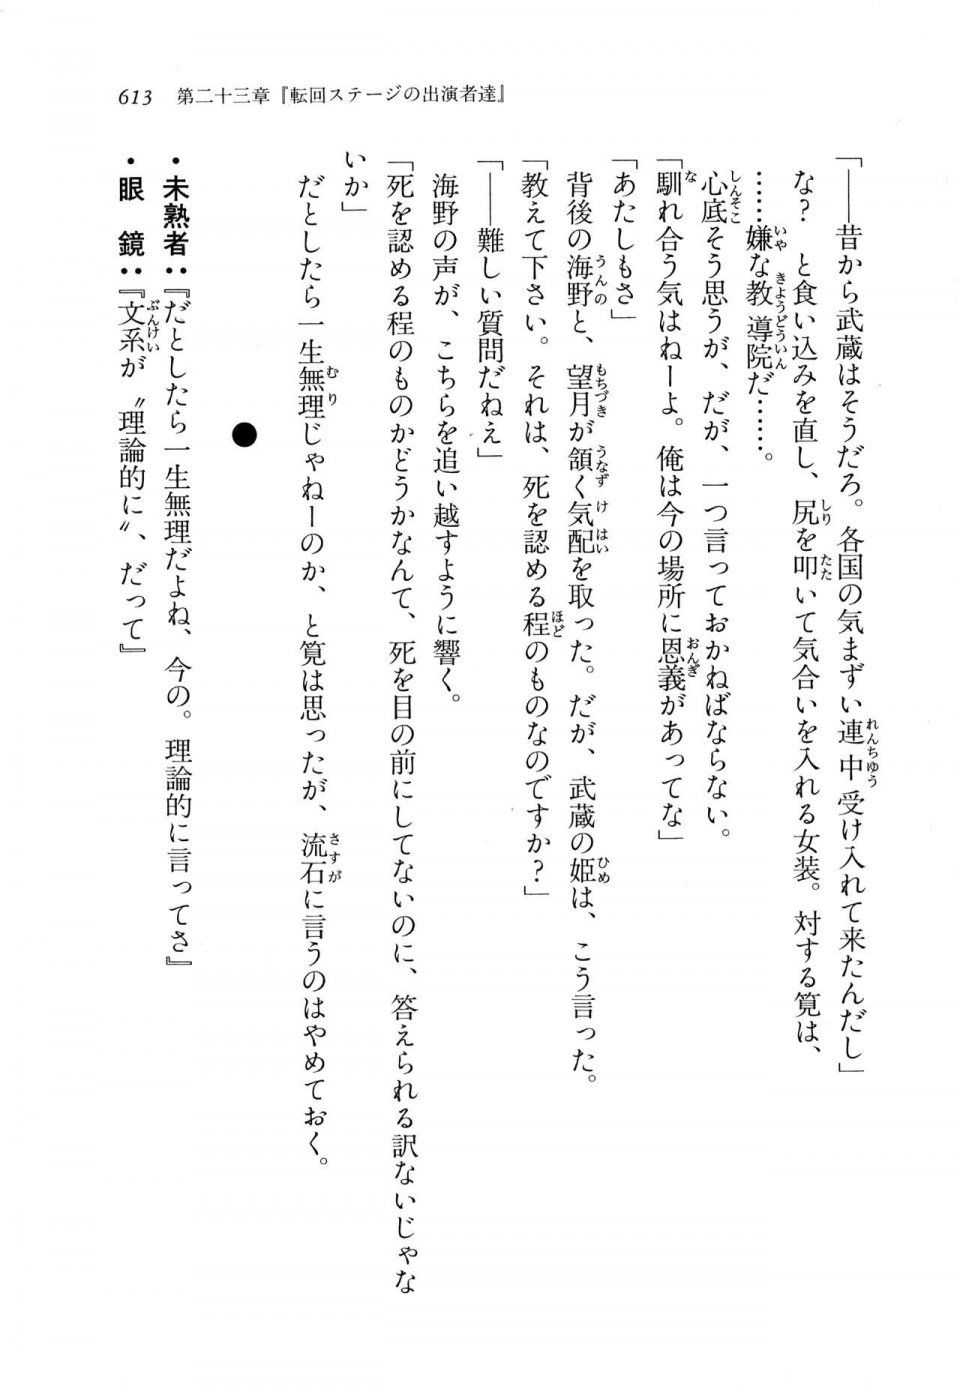 Kyoukai Senjou no Horizon LN Vol 11(5A) - Photo #613